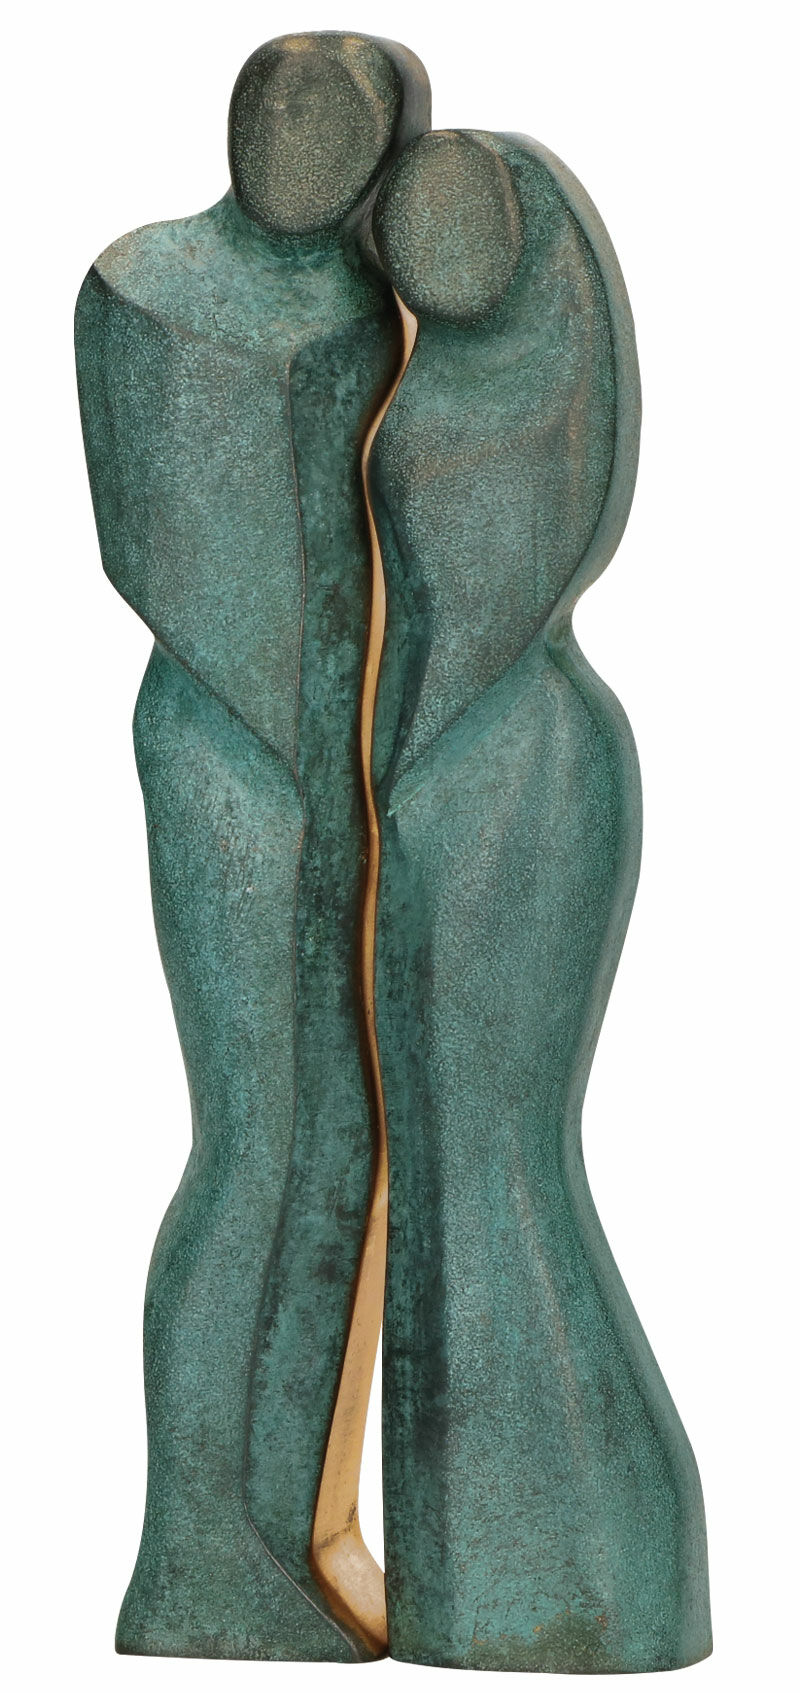 Sculpture "Couple", bronze by Stefanie von Quast